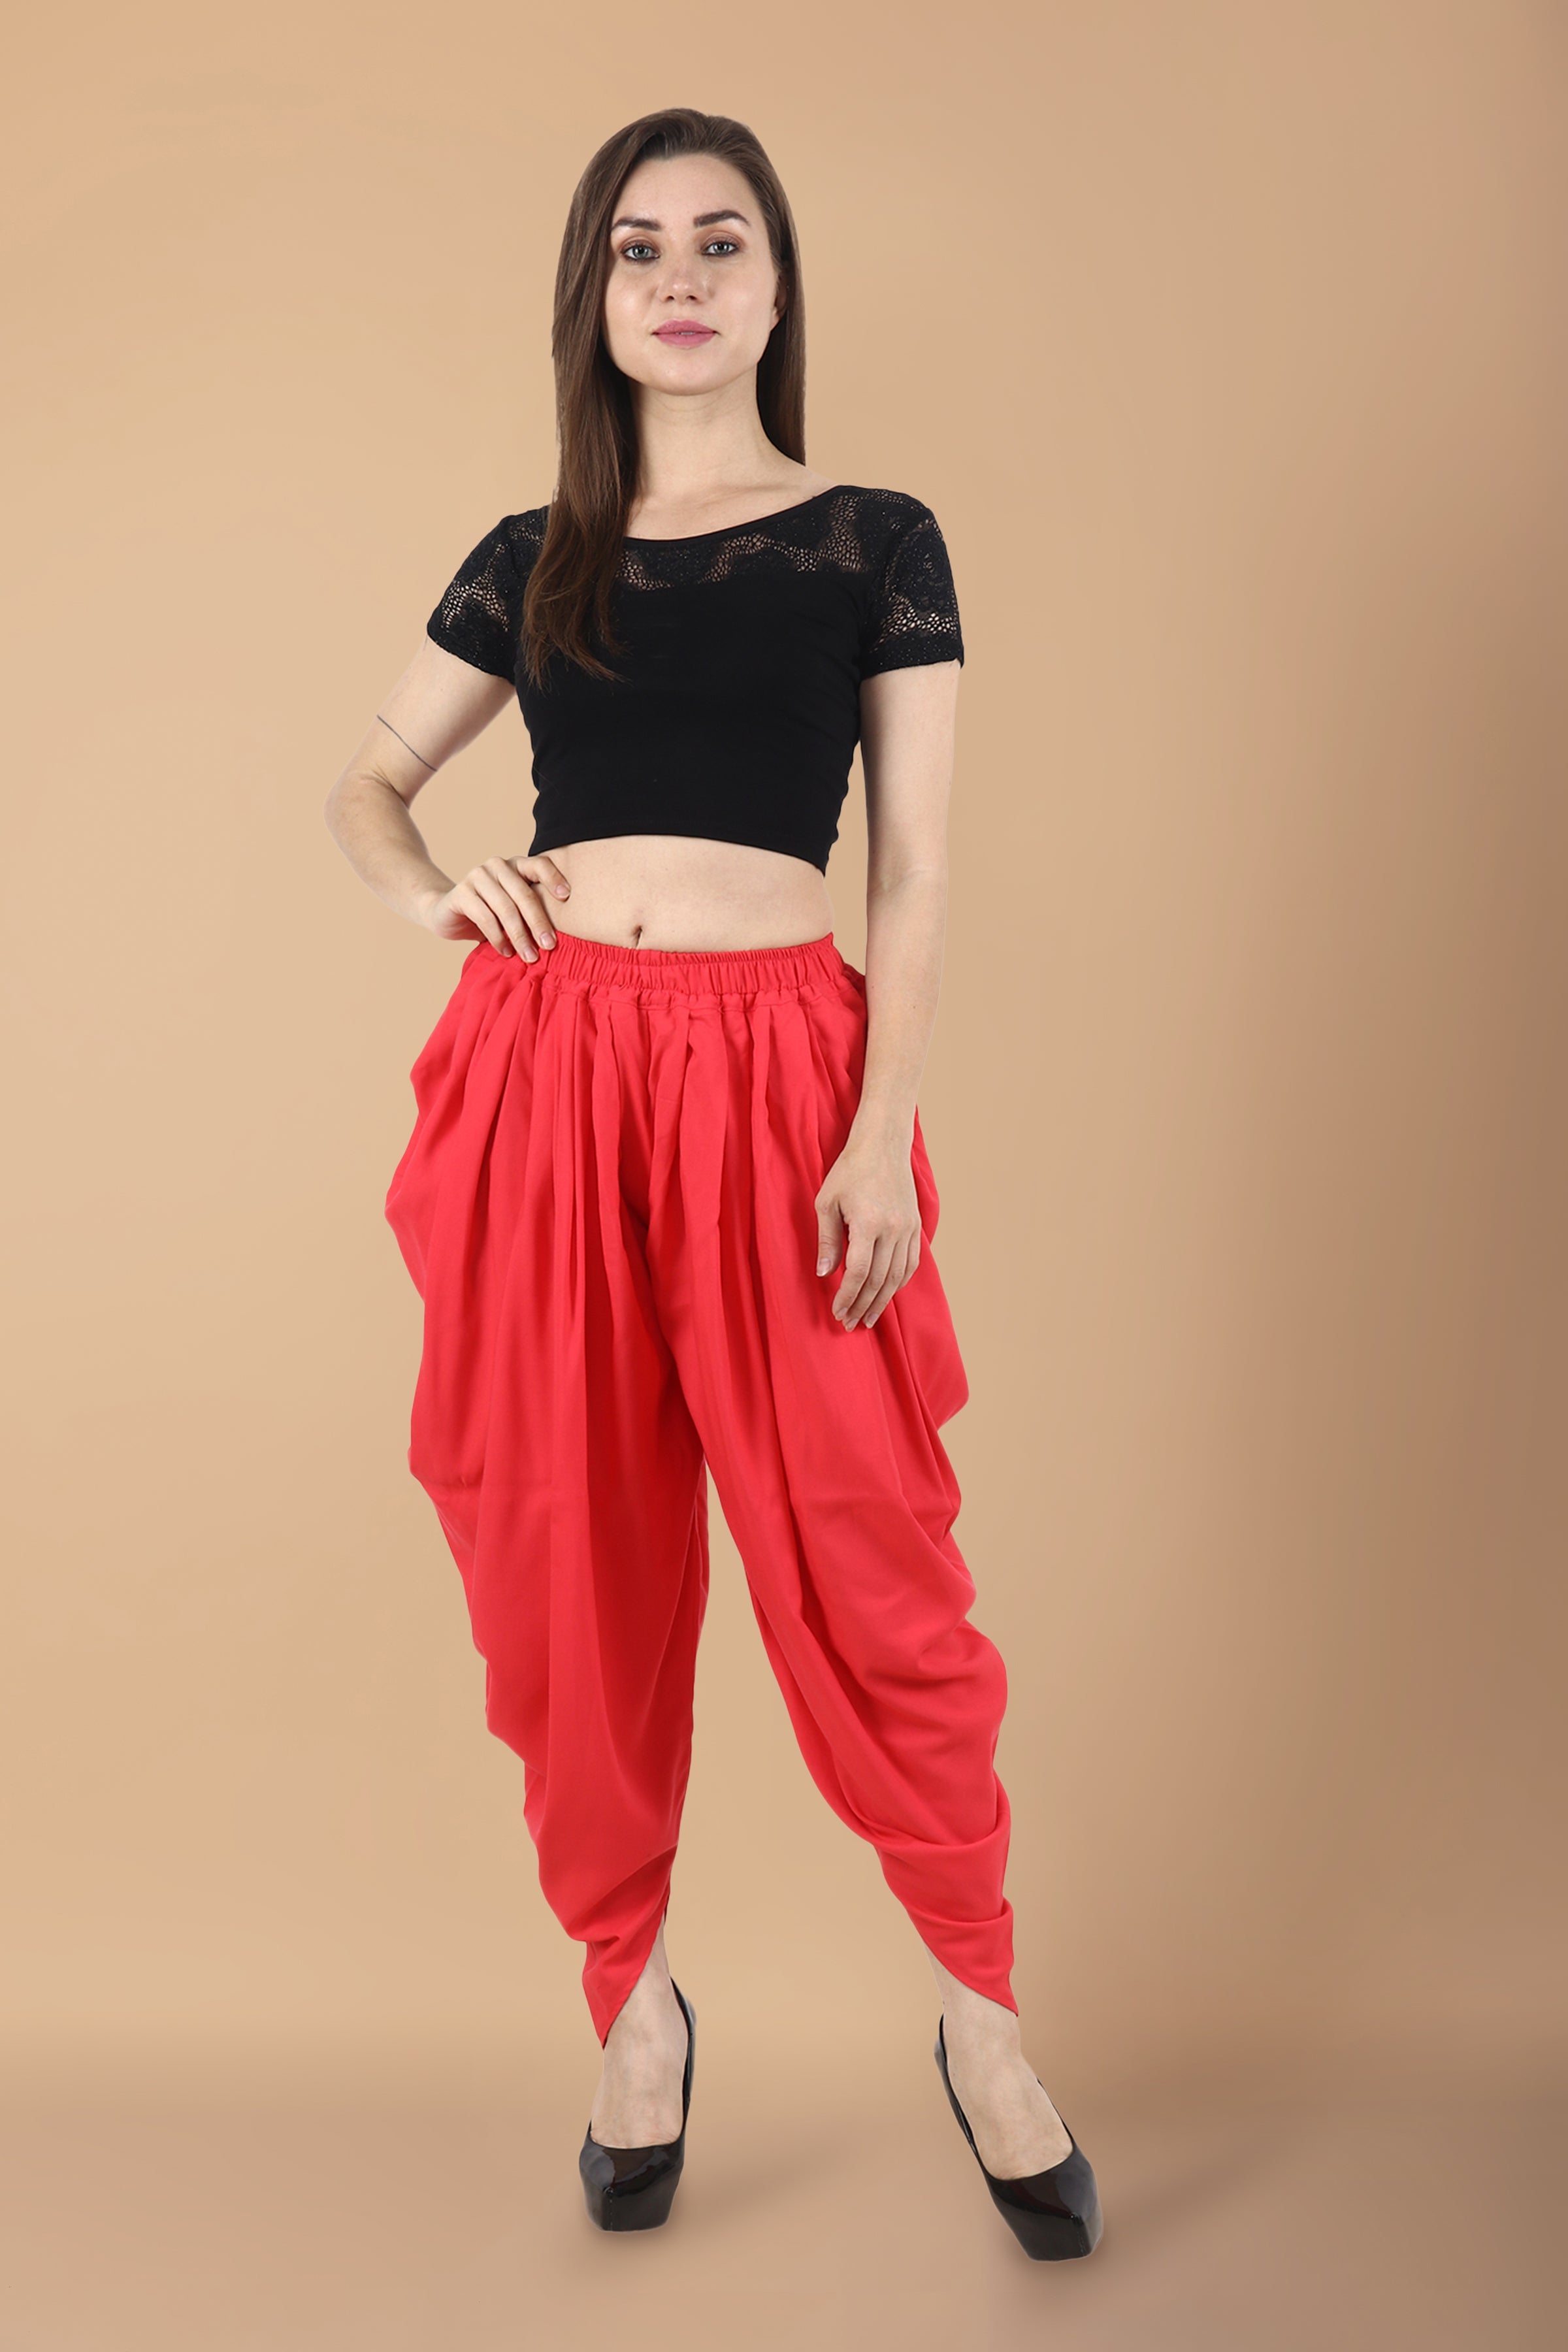 Indian Women's Ready Made Salwar Regular Fit Ethnic Cotton Heram Pants  Free size | eBay